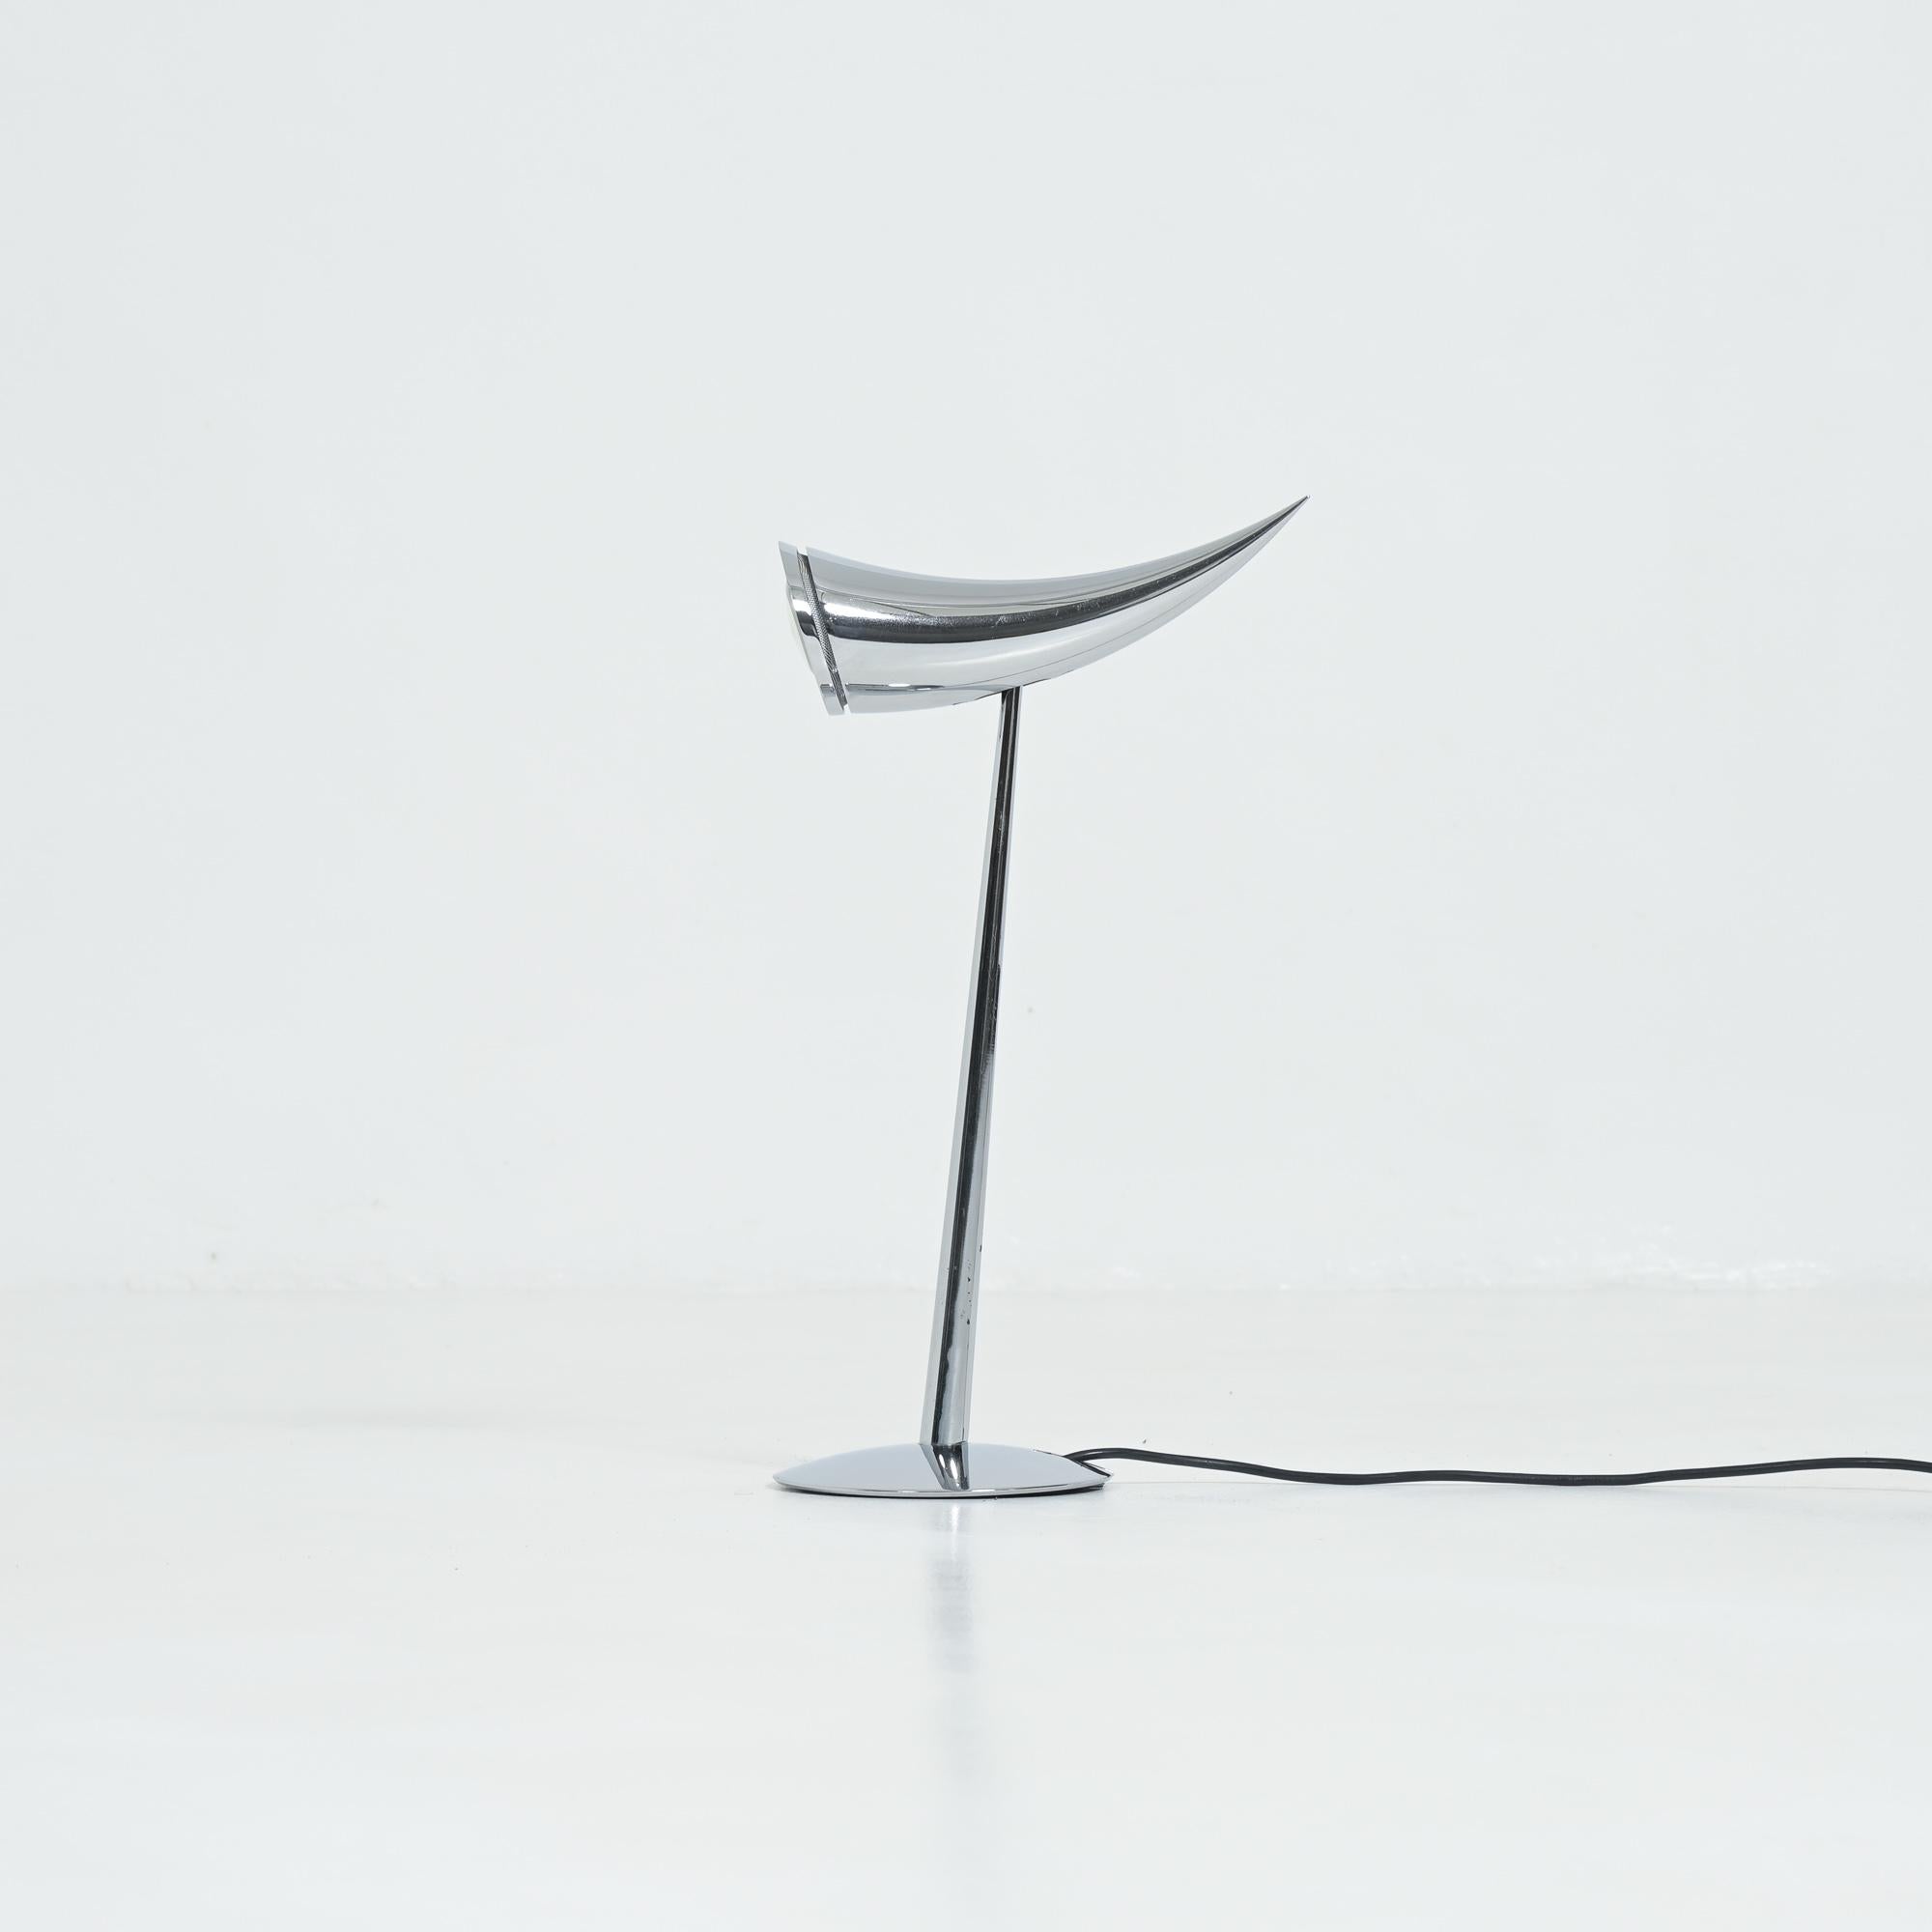 Cette lampe de table Ara en forme de corne a été conçue par Philippe Starck pour Flos en 1988.
Il porte le nom de sa fille.
Ce design classique de Starck incorpore des lignes audacieuses qui lui confèrent une présence sculpturale très